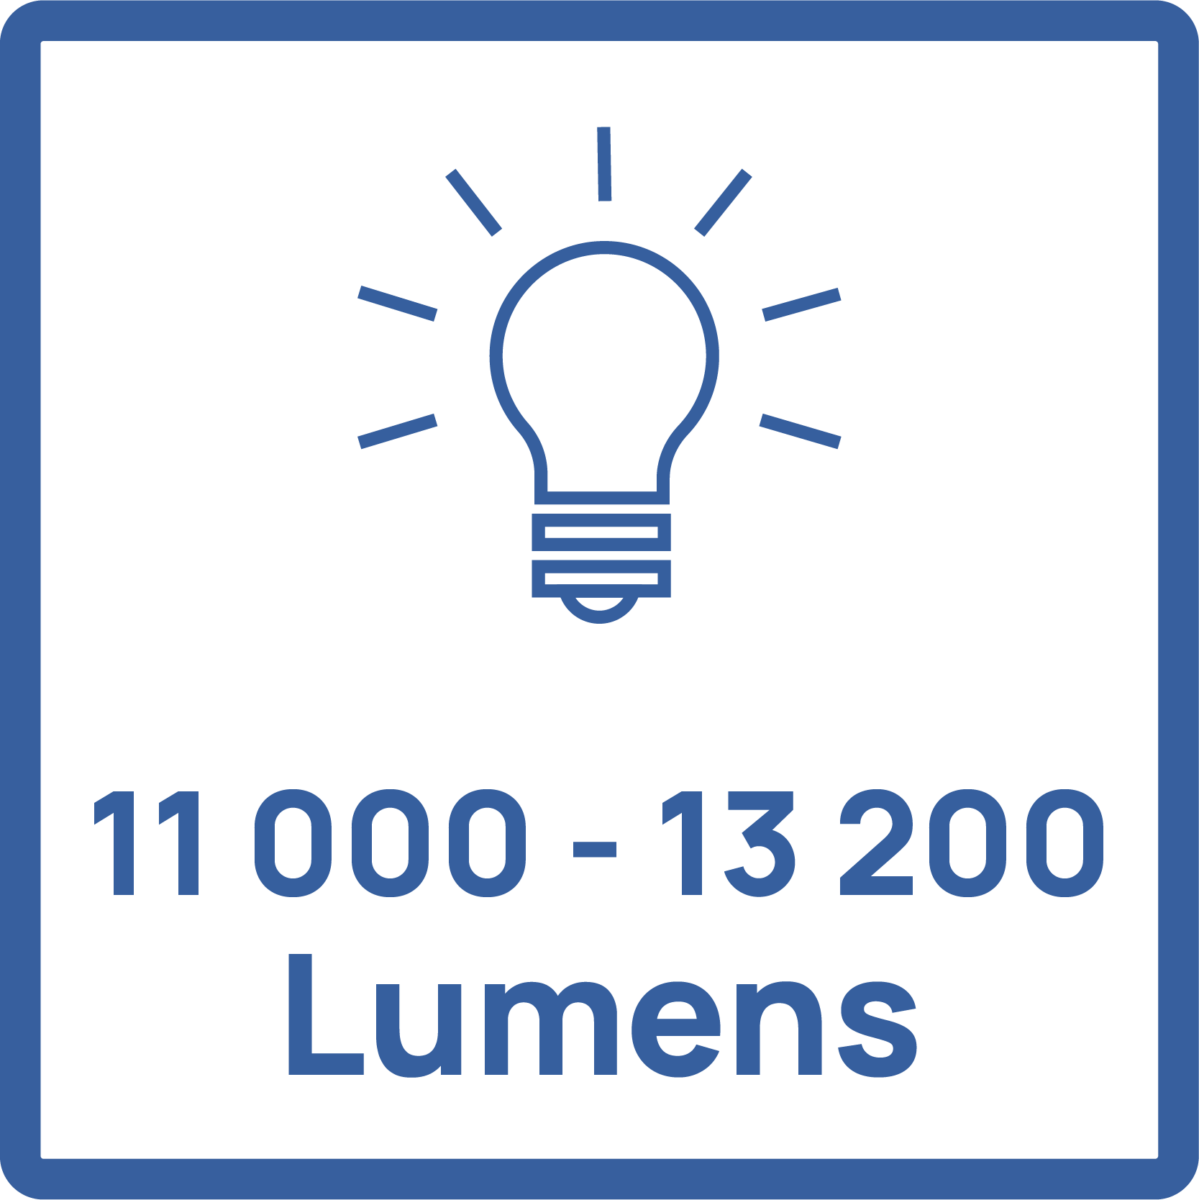 Pictogramme puissance lumineuse de l'appareil : 11 000 à 13 200 Lumens